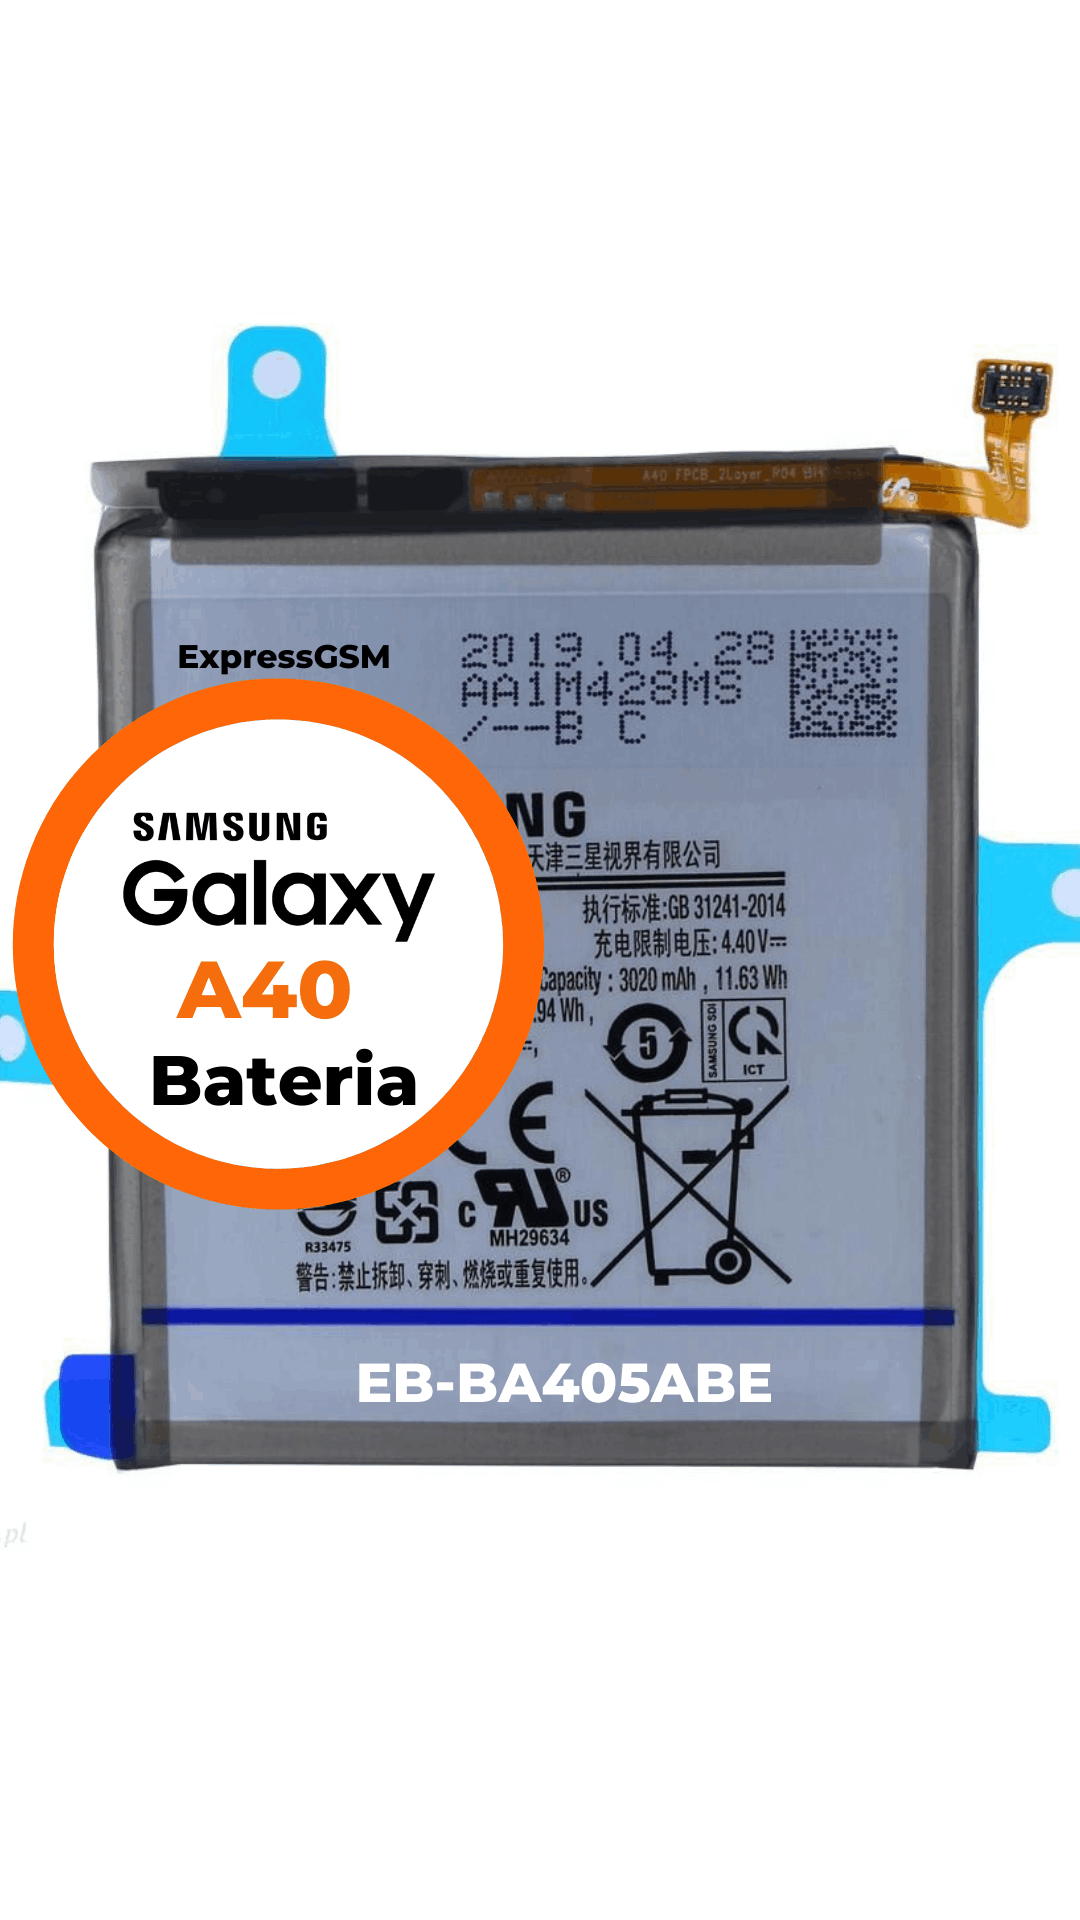 Samsung A40 Bateria